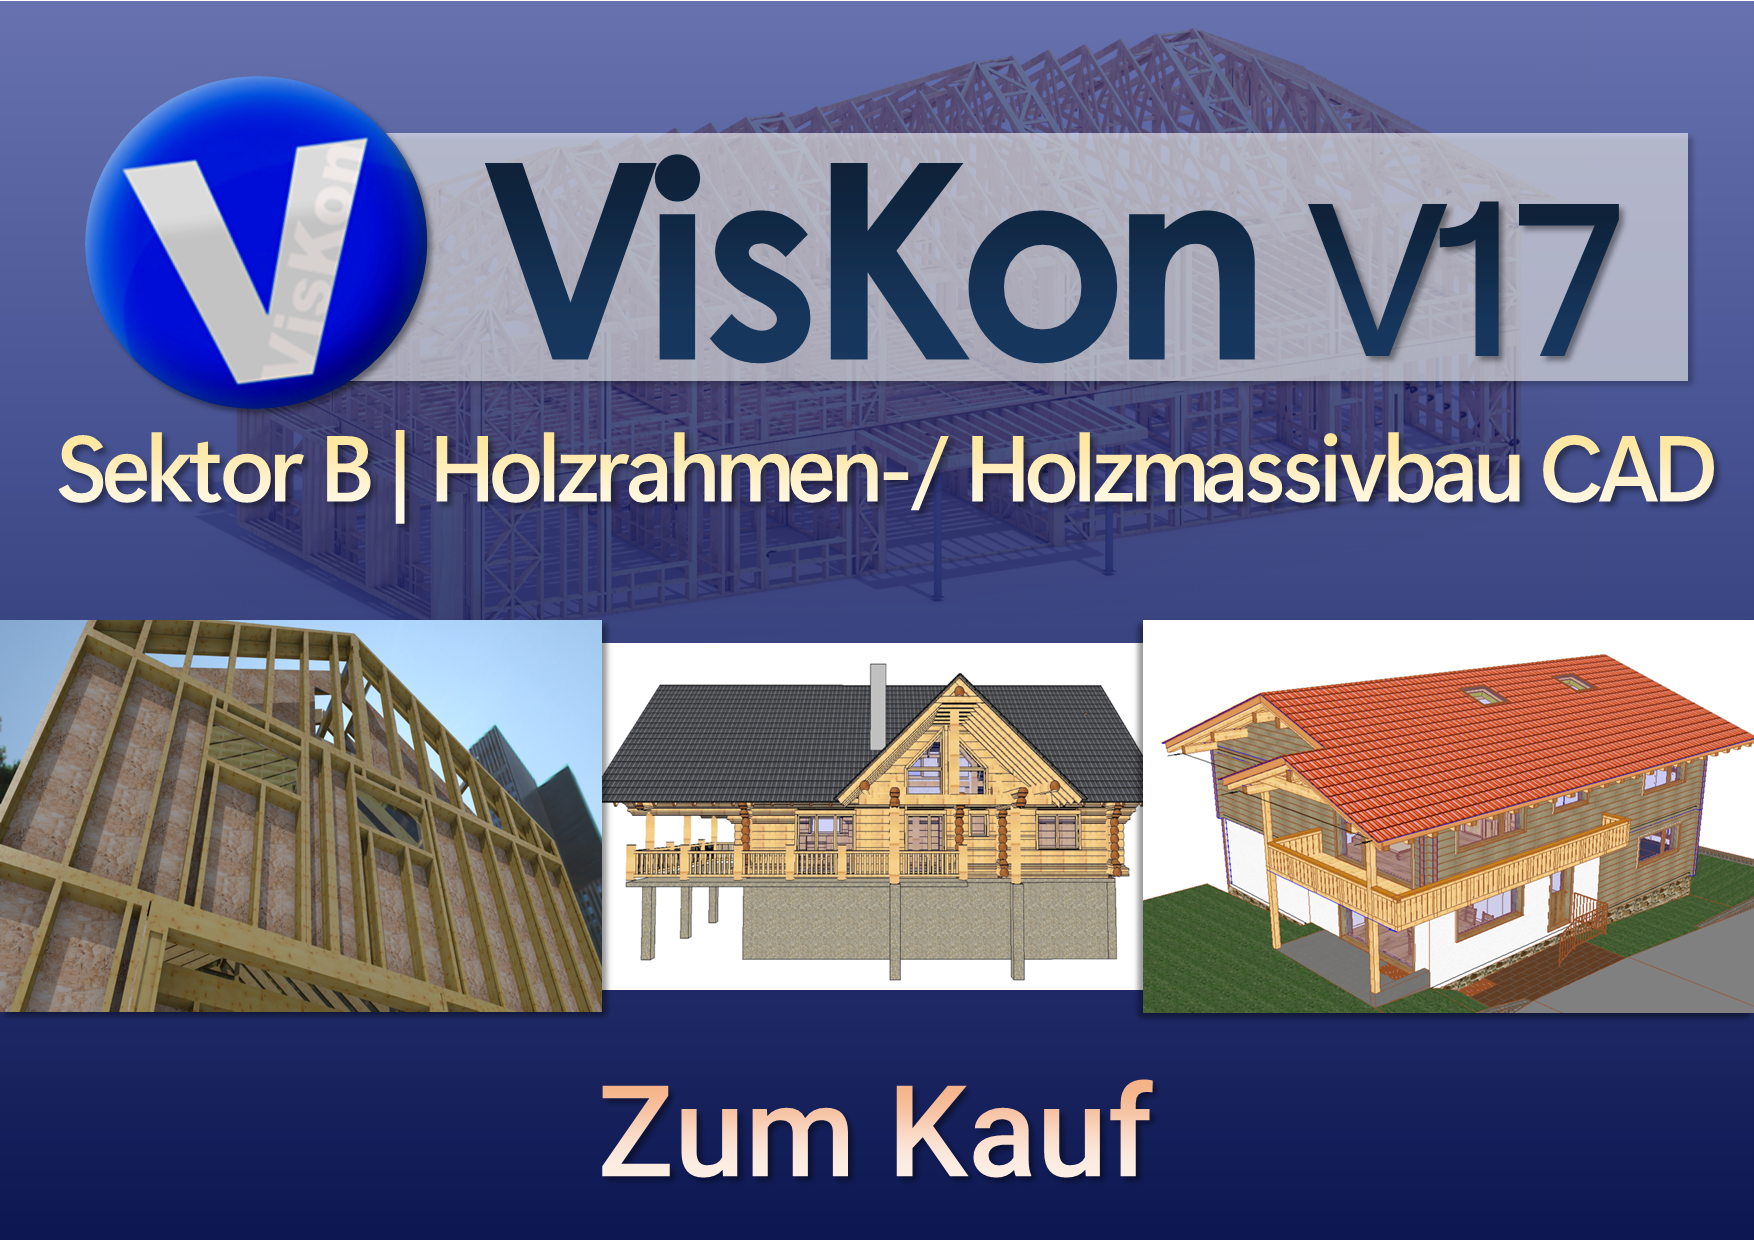 VISKON V17 3D-CAD/CAM - Sektor B (Holzrahmen-/ Holzmassivbau CAD) | Zum Kauf